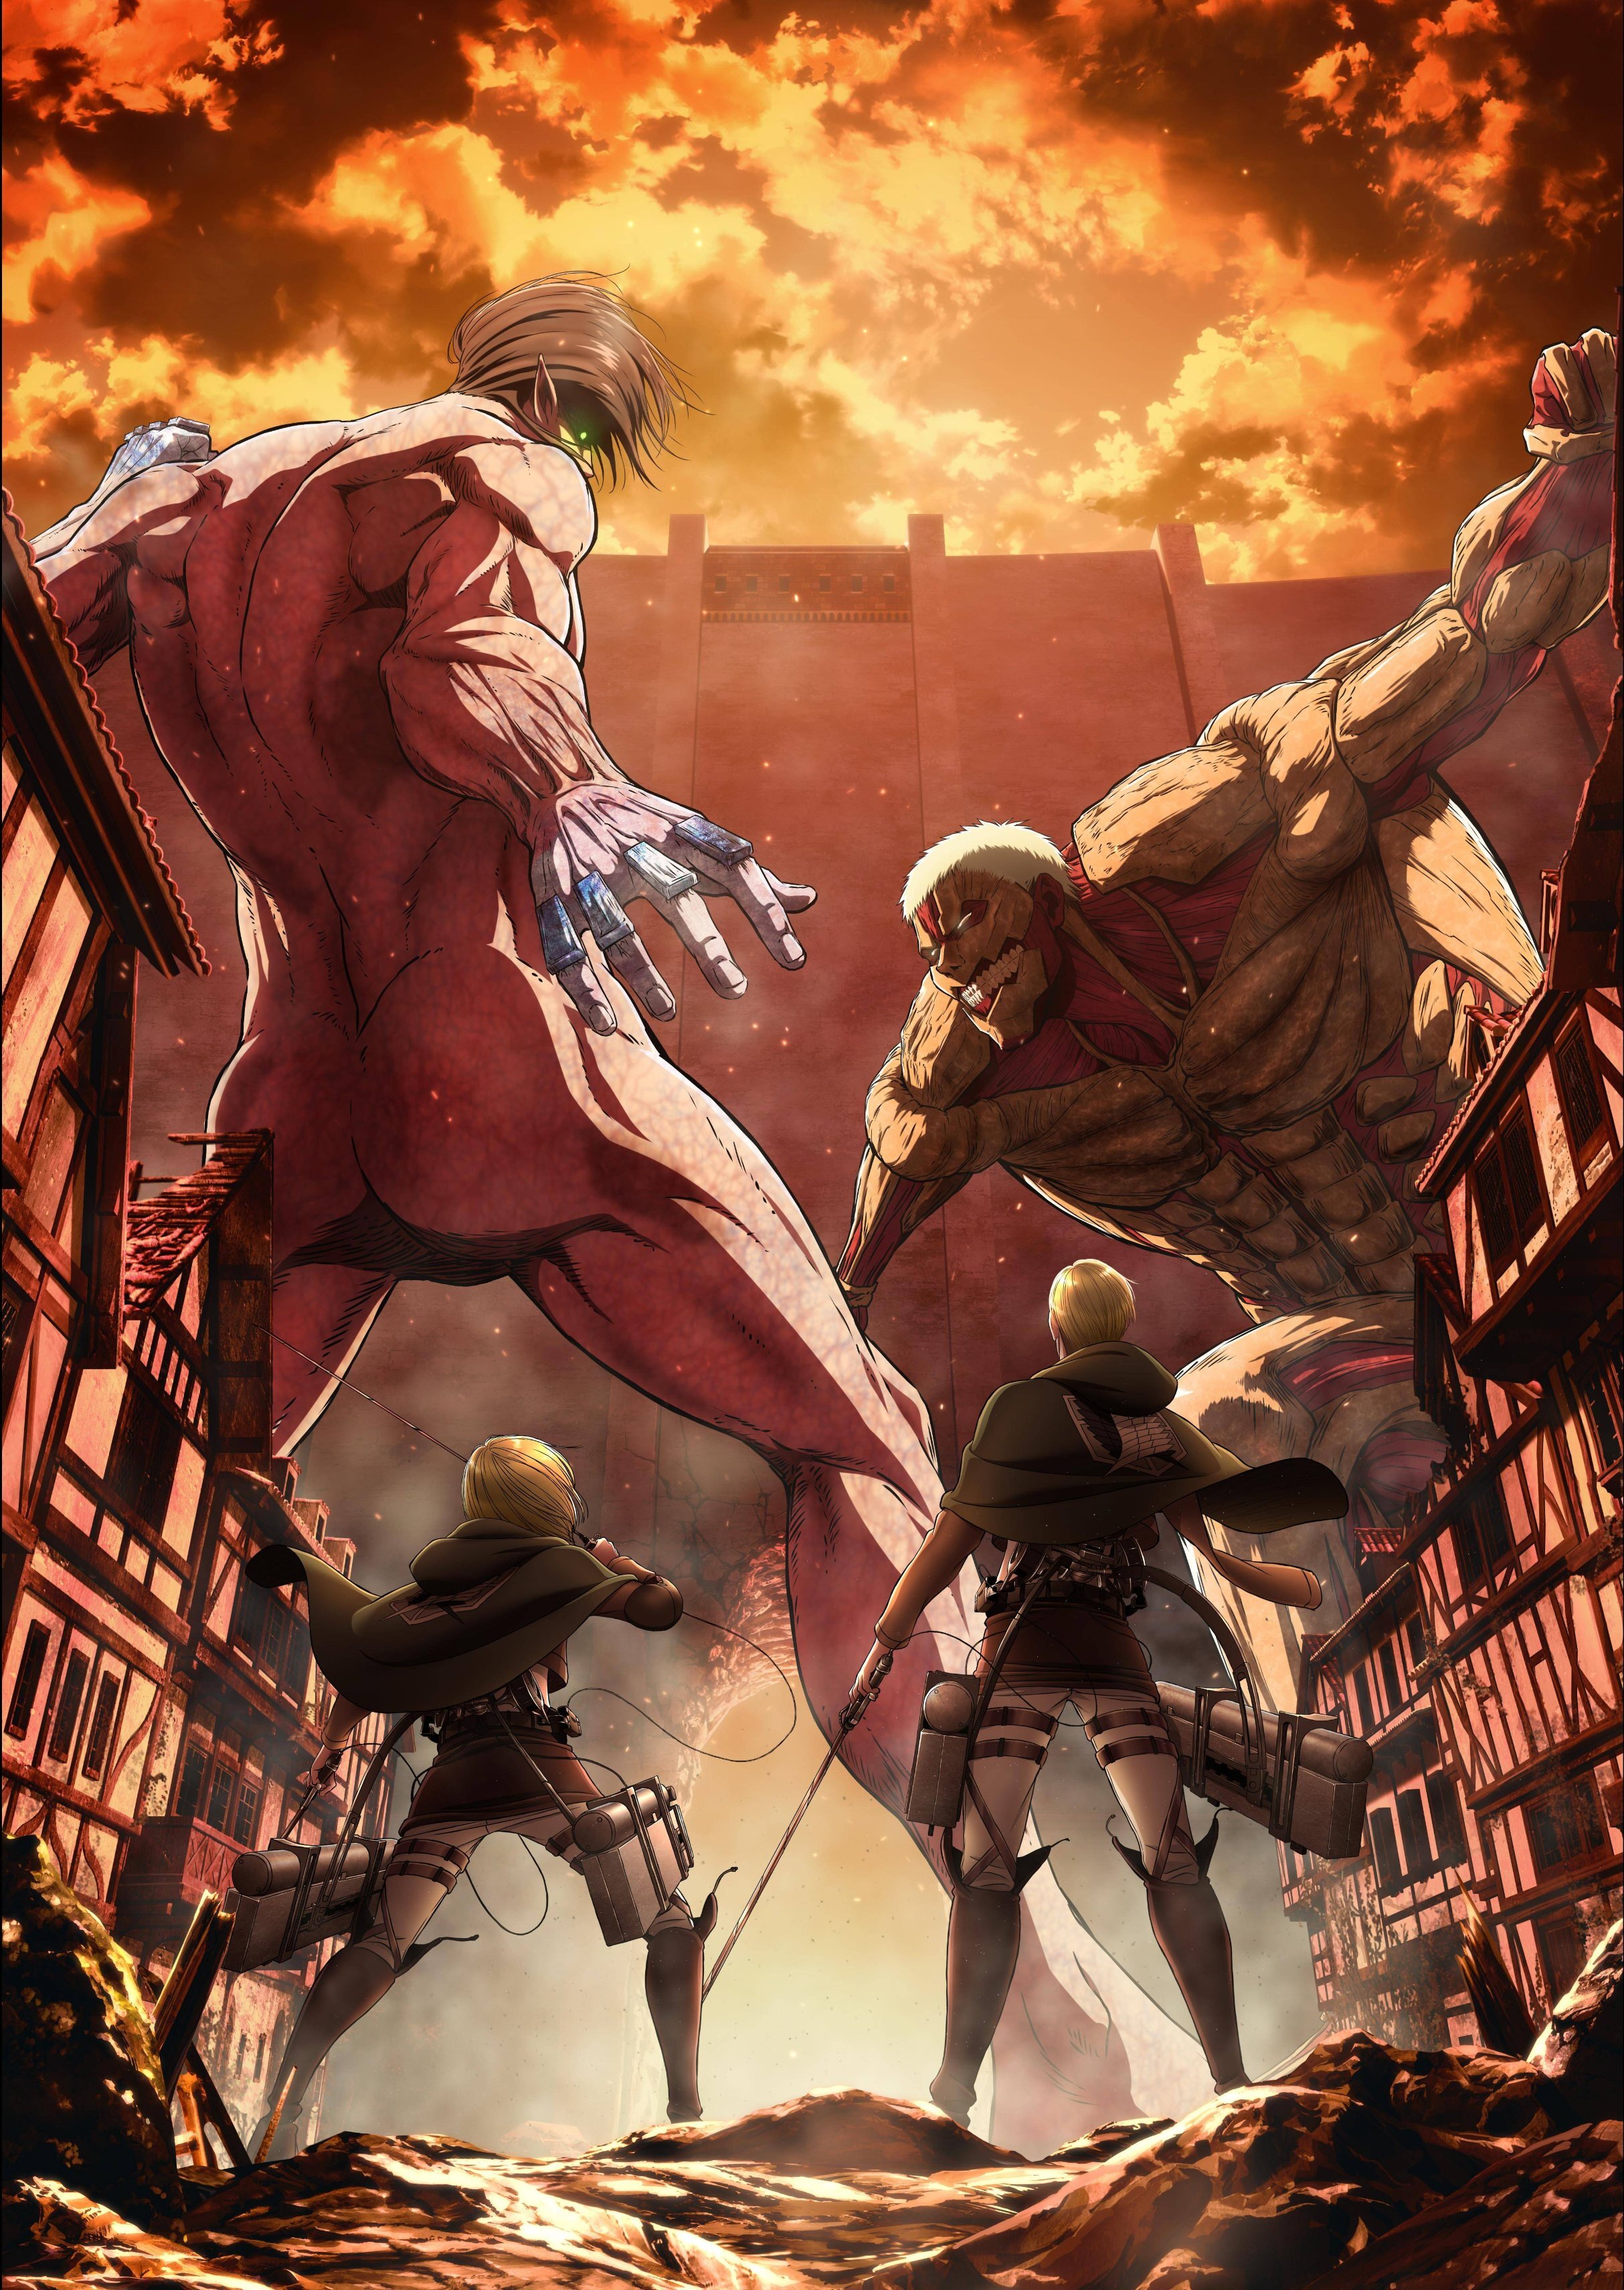 Attack on Titan (Anime) | Attack on Titan Wiki | Fandom